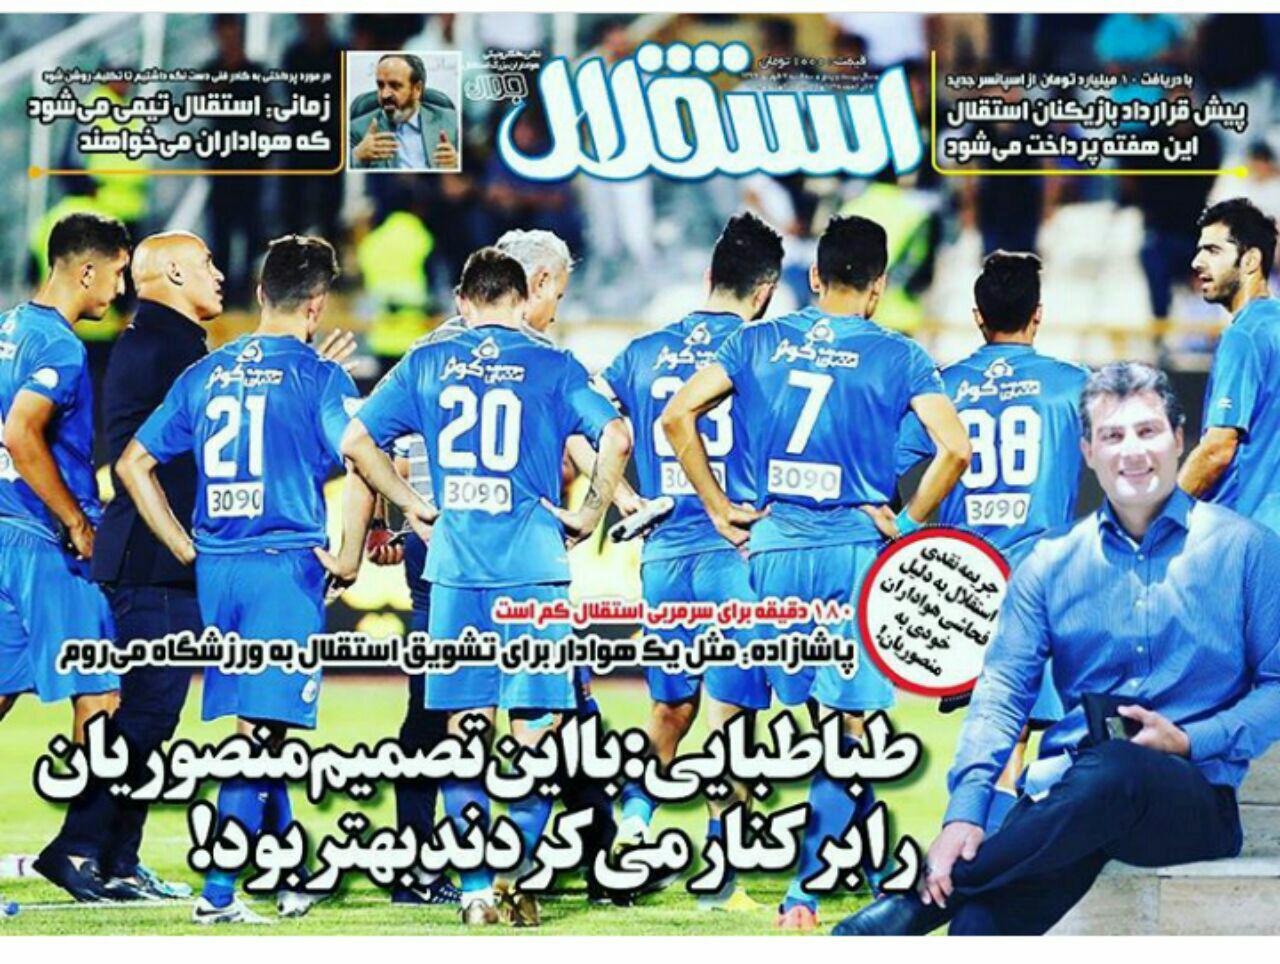 گیشه روزنامه های ورزشی ایران 7 شهریور 96